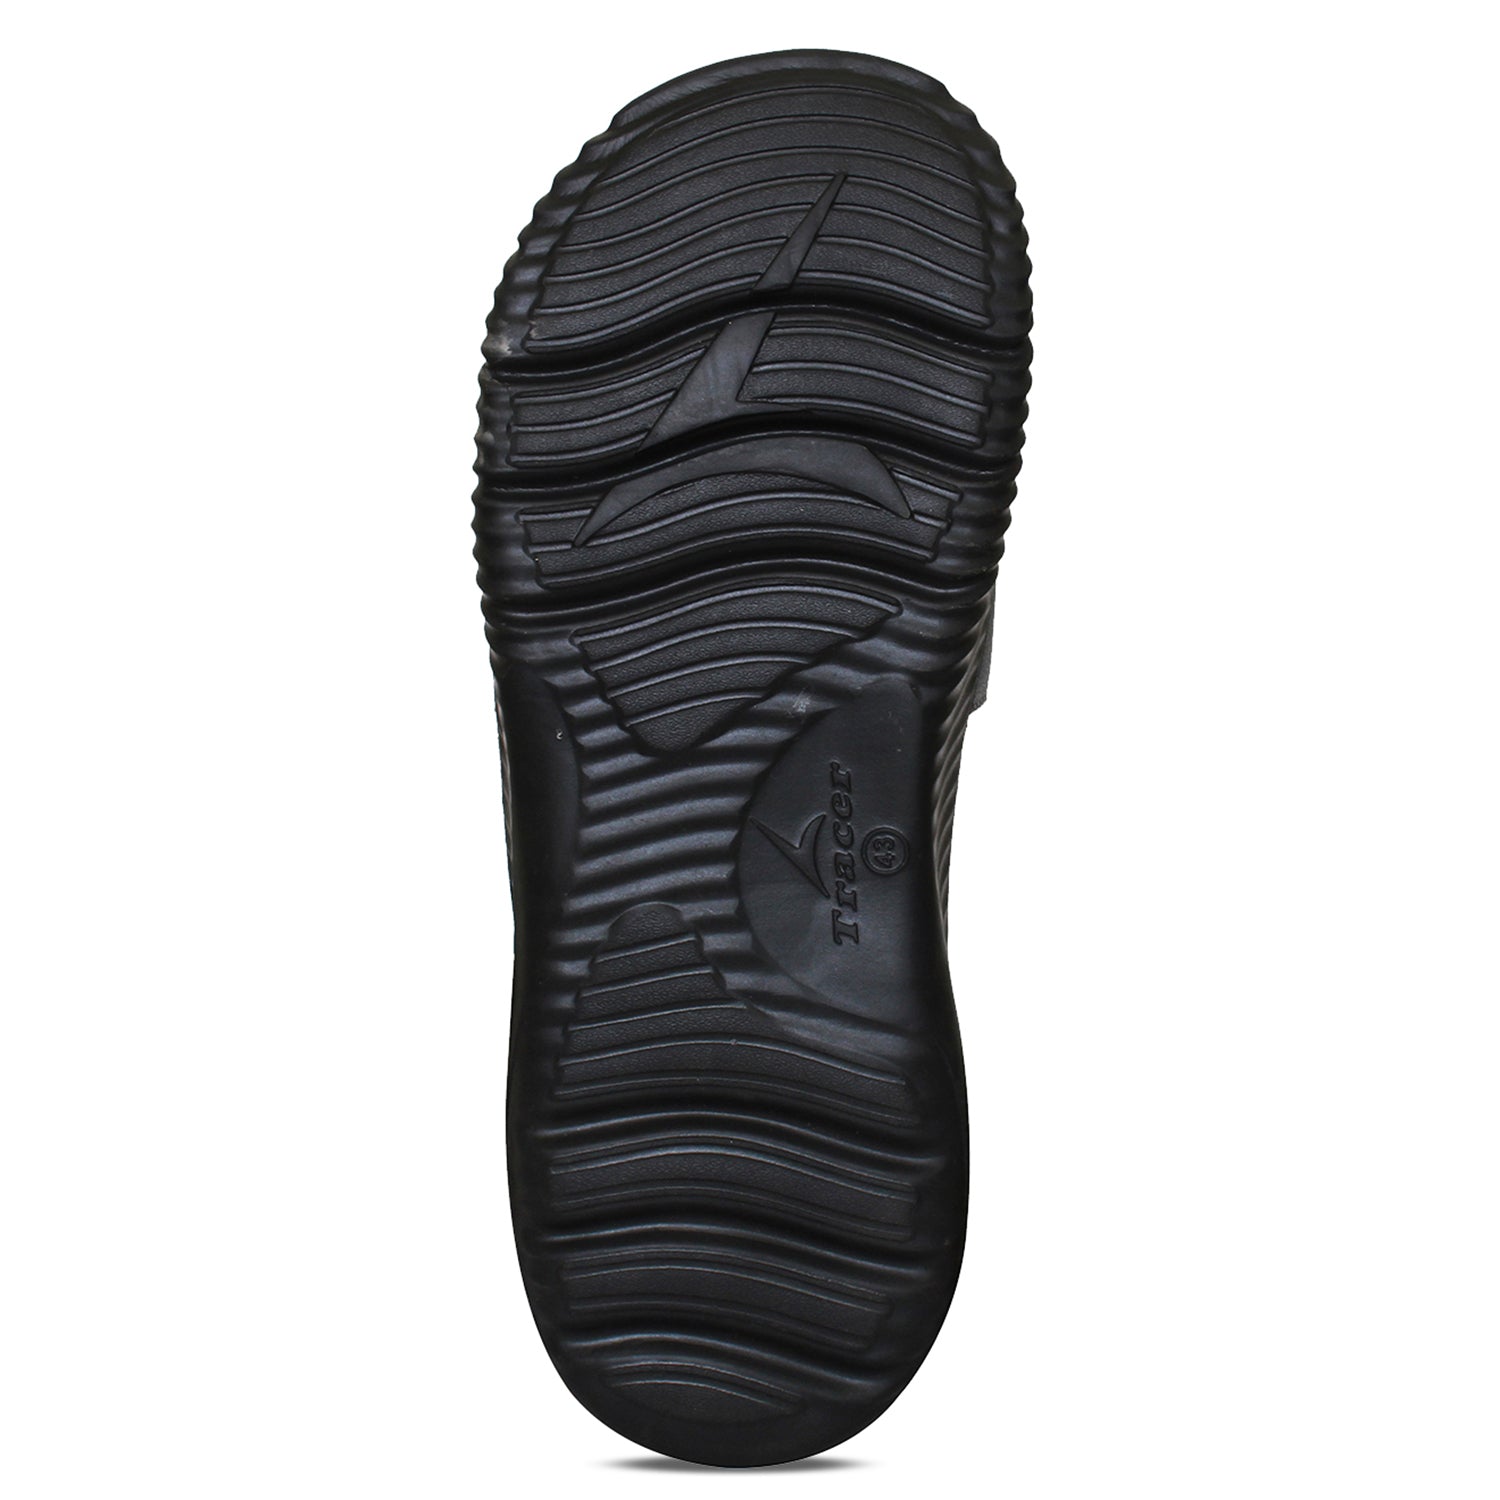 Flat Slippers For Men's Black